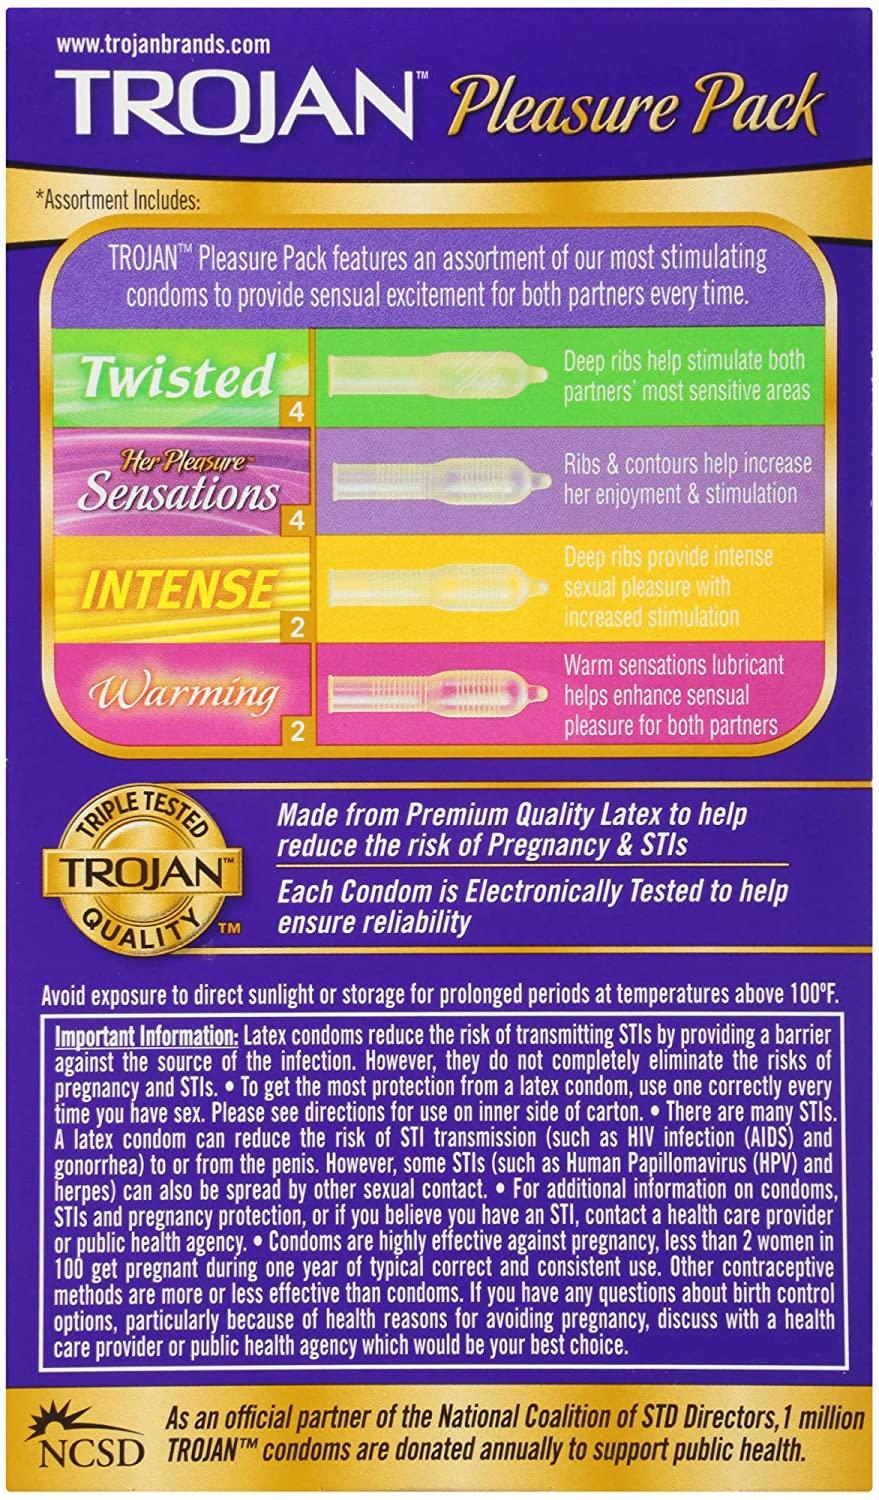 Trojan Pleasure Variety Pack Lubricated Condoms, 12 Count